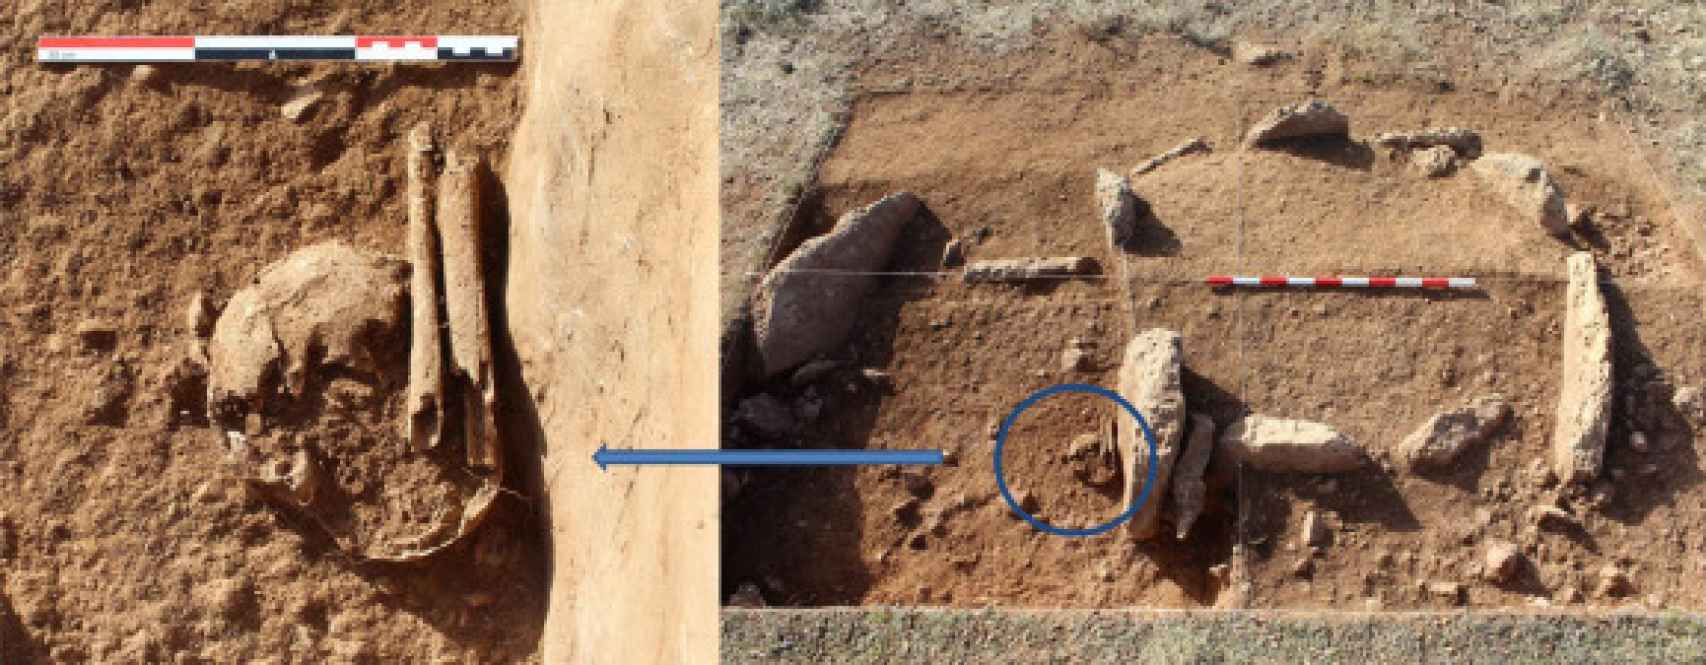 Enterramiento en fosa junto a la cámara funeraria de la Tumba 15. Derecha: ubicación de la fosa. Izquierda: detalle de los restos óseos humanos.